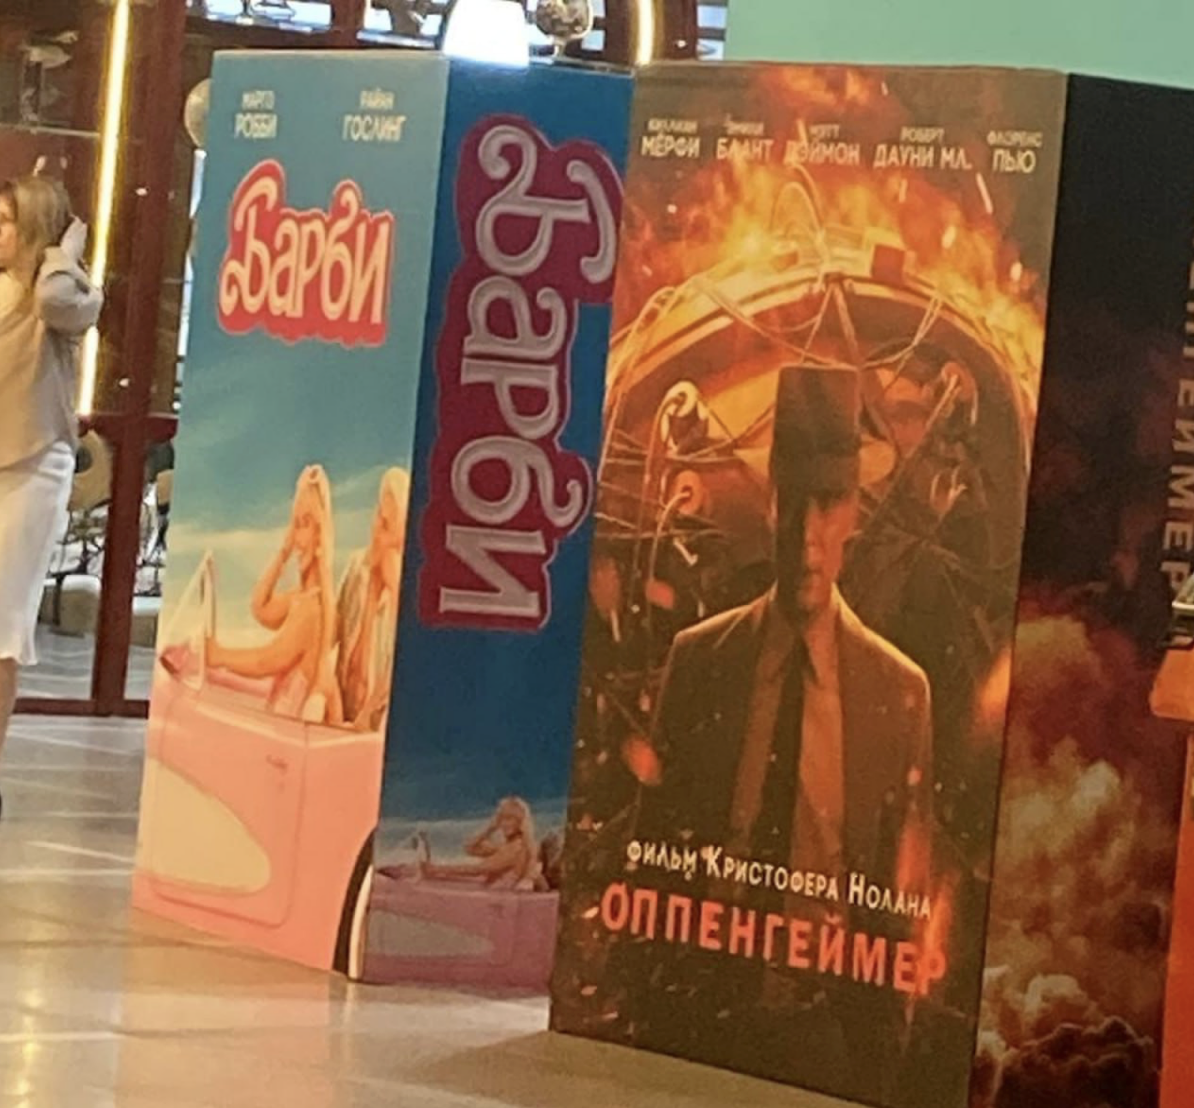 У Росії знайшли ганебний спосіб, як показати "Барбі" та "Оппенгеймера" в кінотеатрах, і розкрили постачальника "санкціонки"